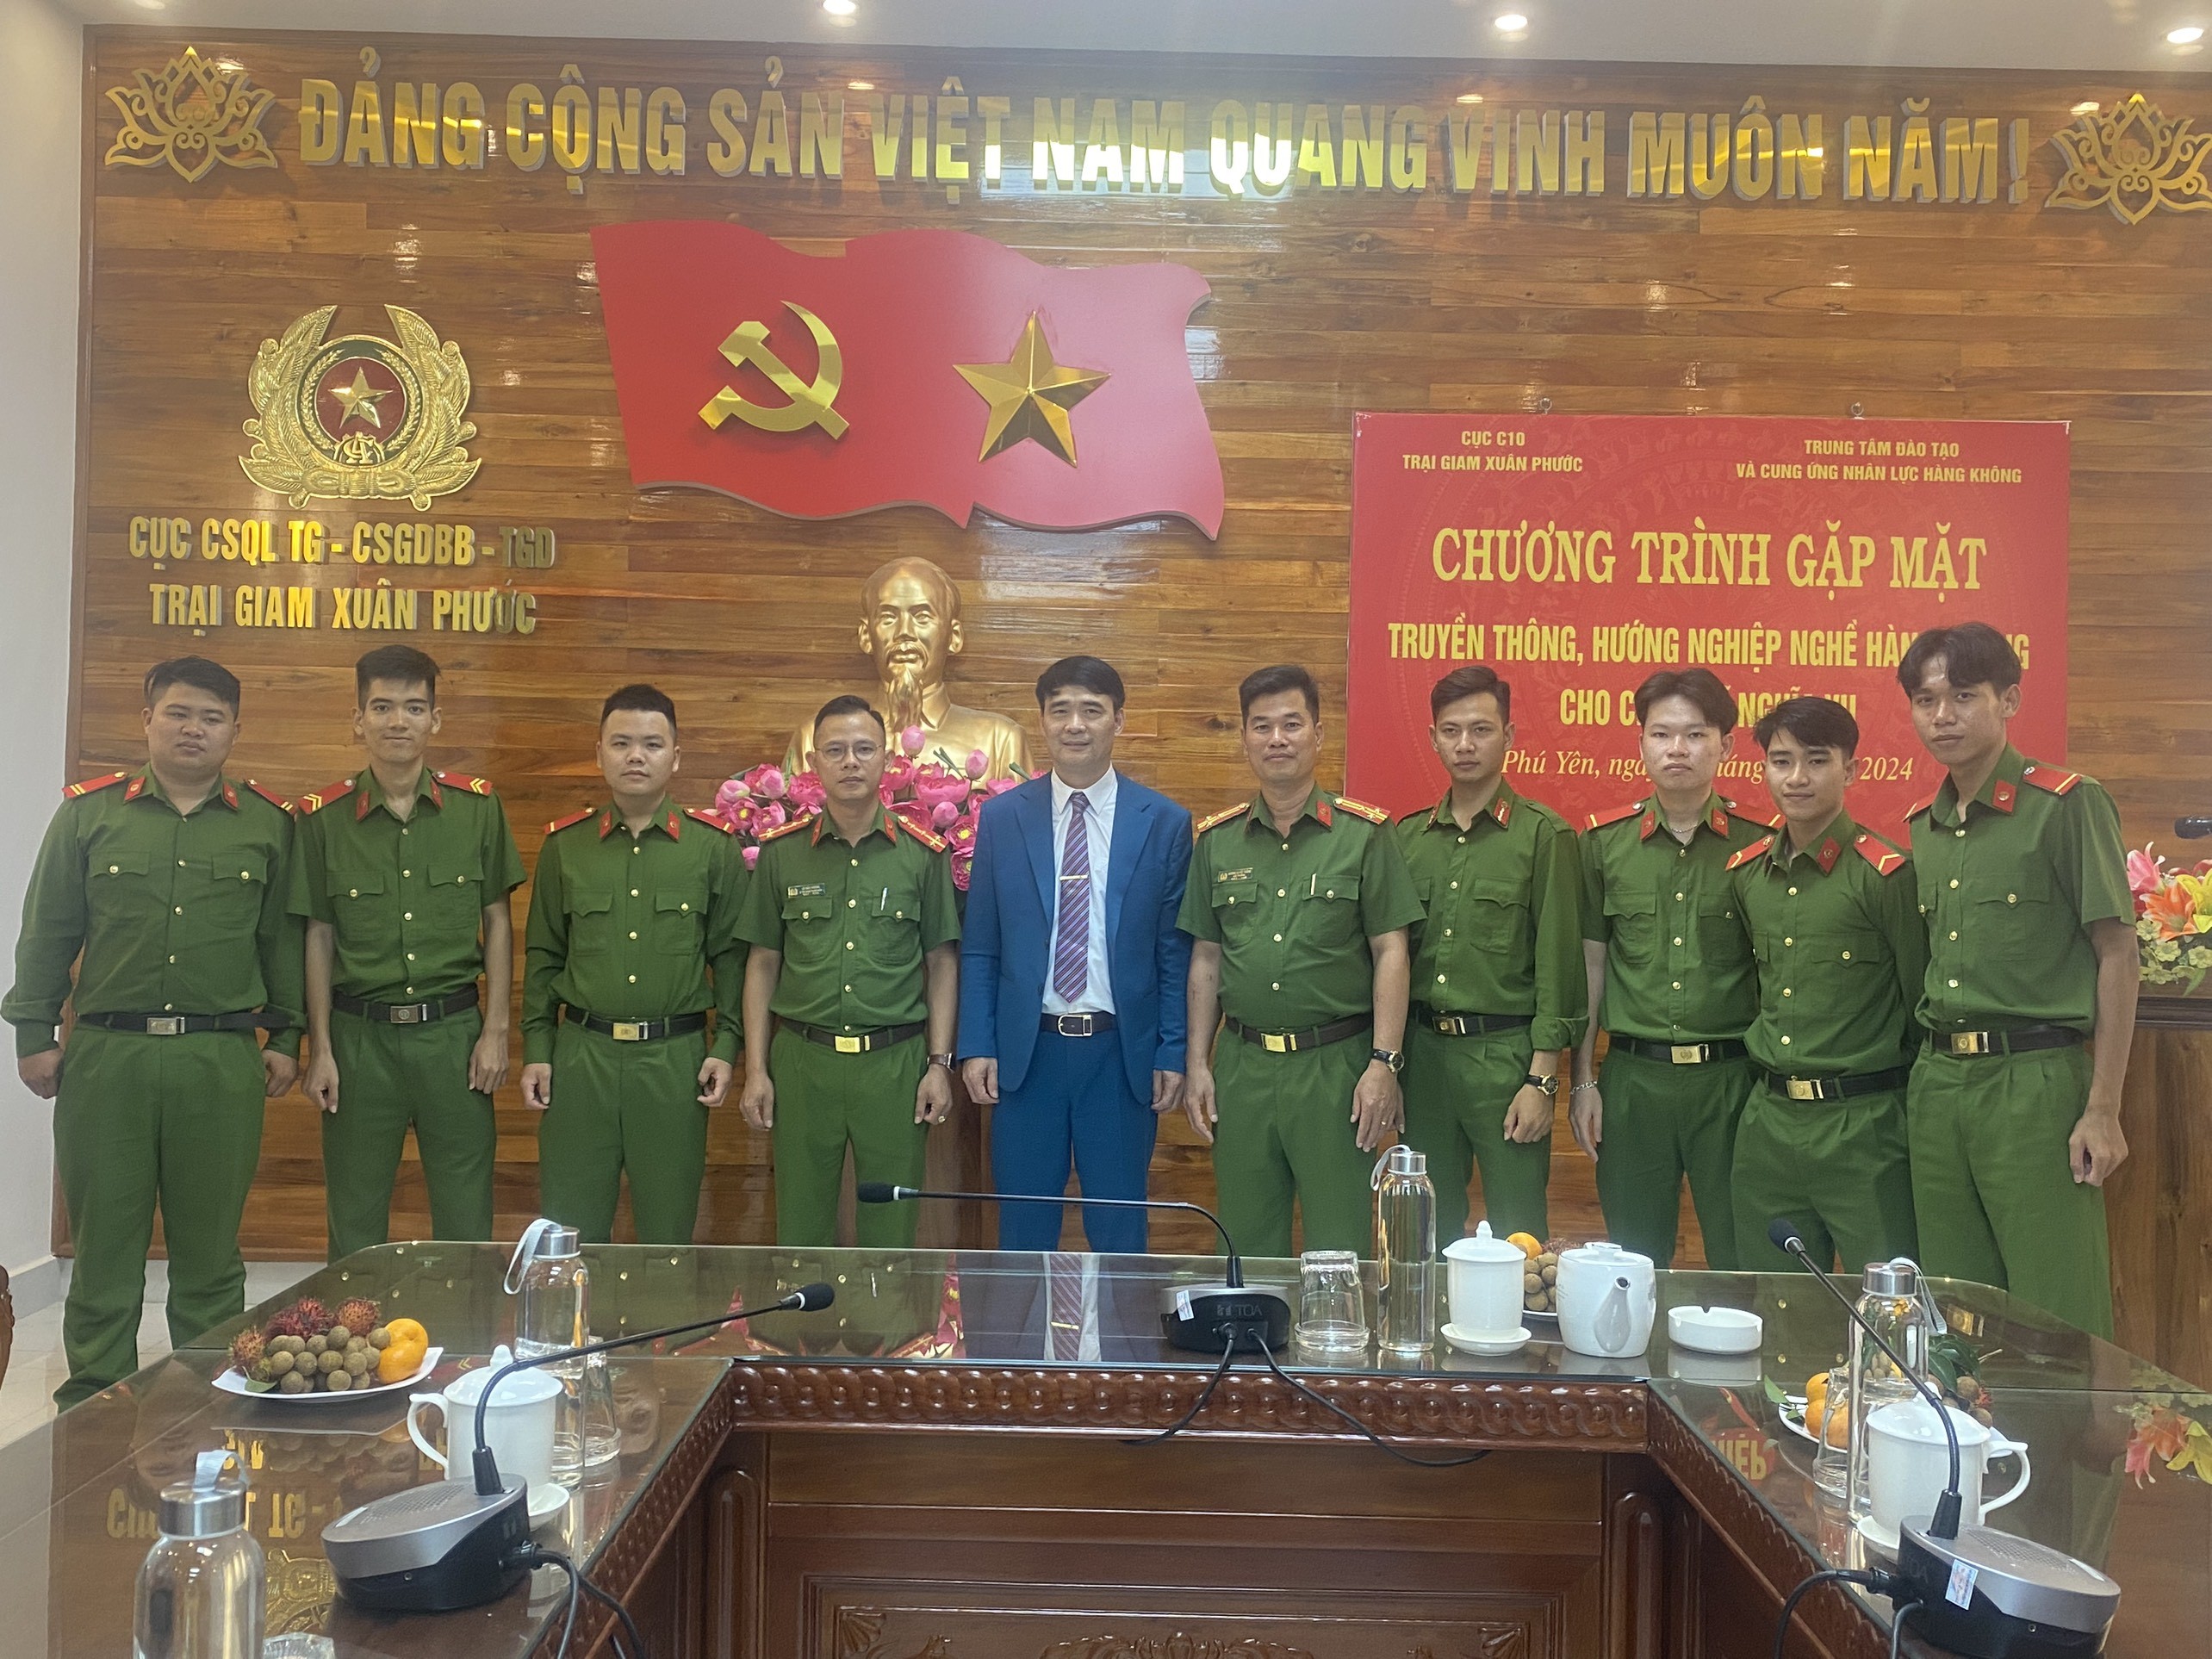 TTCUNL-Tư vấn nghề nghiệp và giới thiệu việc làm cho chiến sỹ nghĩa vụ Trại giam Xuân Phước, Phú Yên